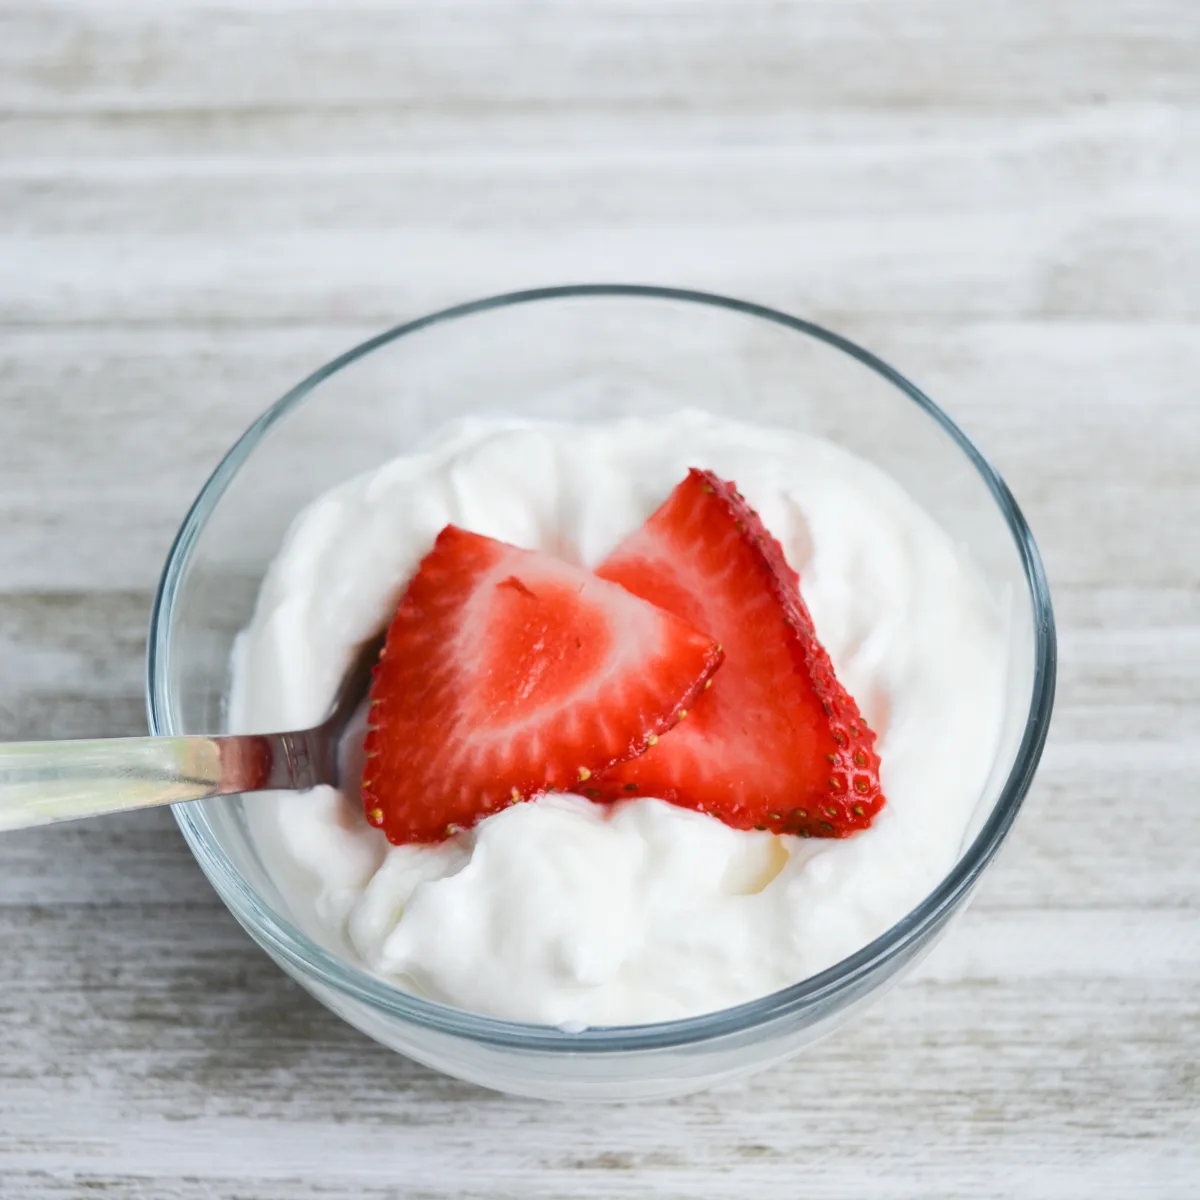 gros plan d'une portion de yaourt dans un petit bol avec une cuillère, garnie de fraises tranchées